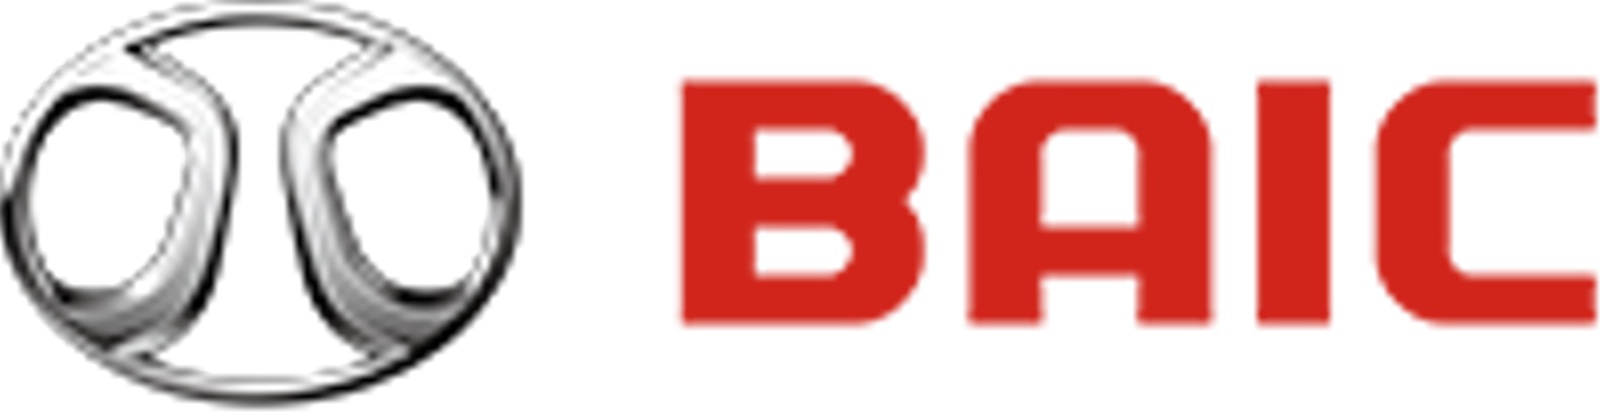 логотип BAIC